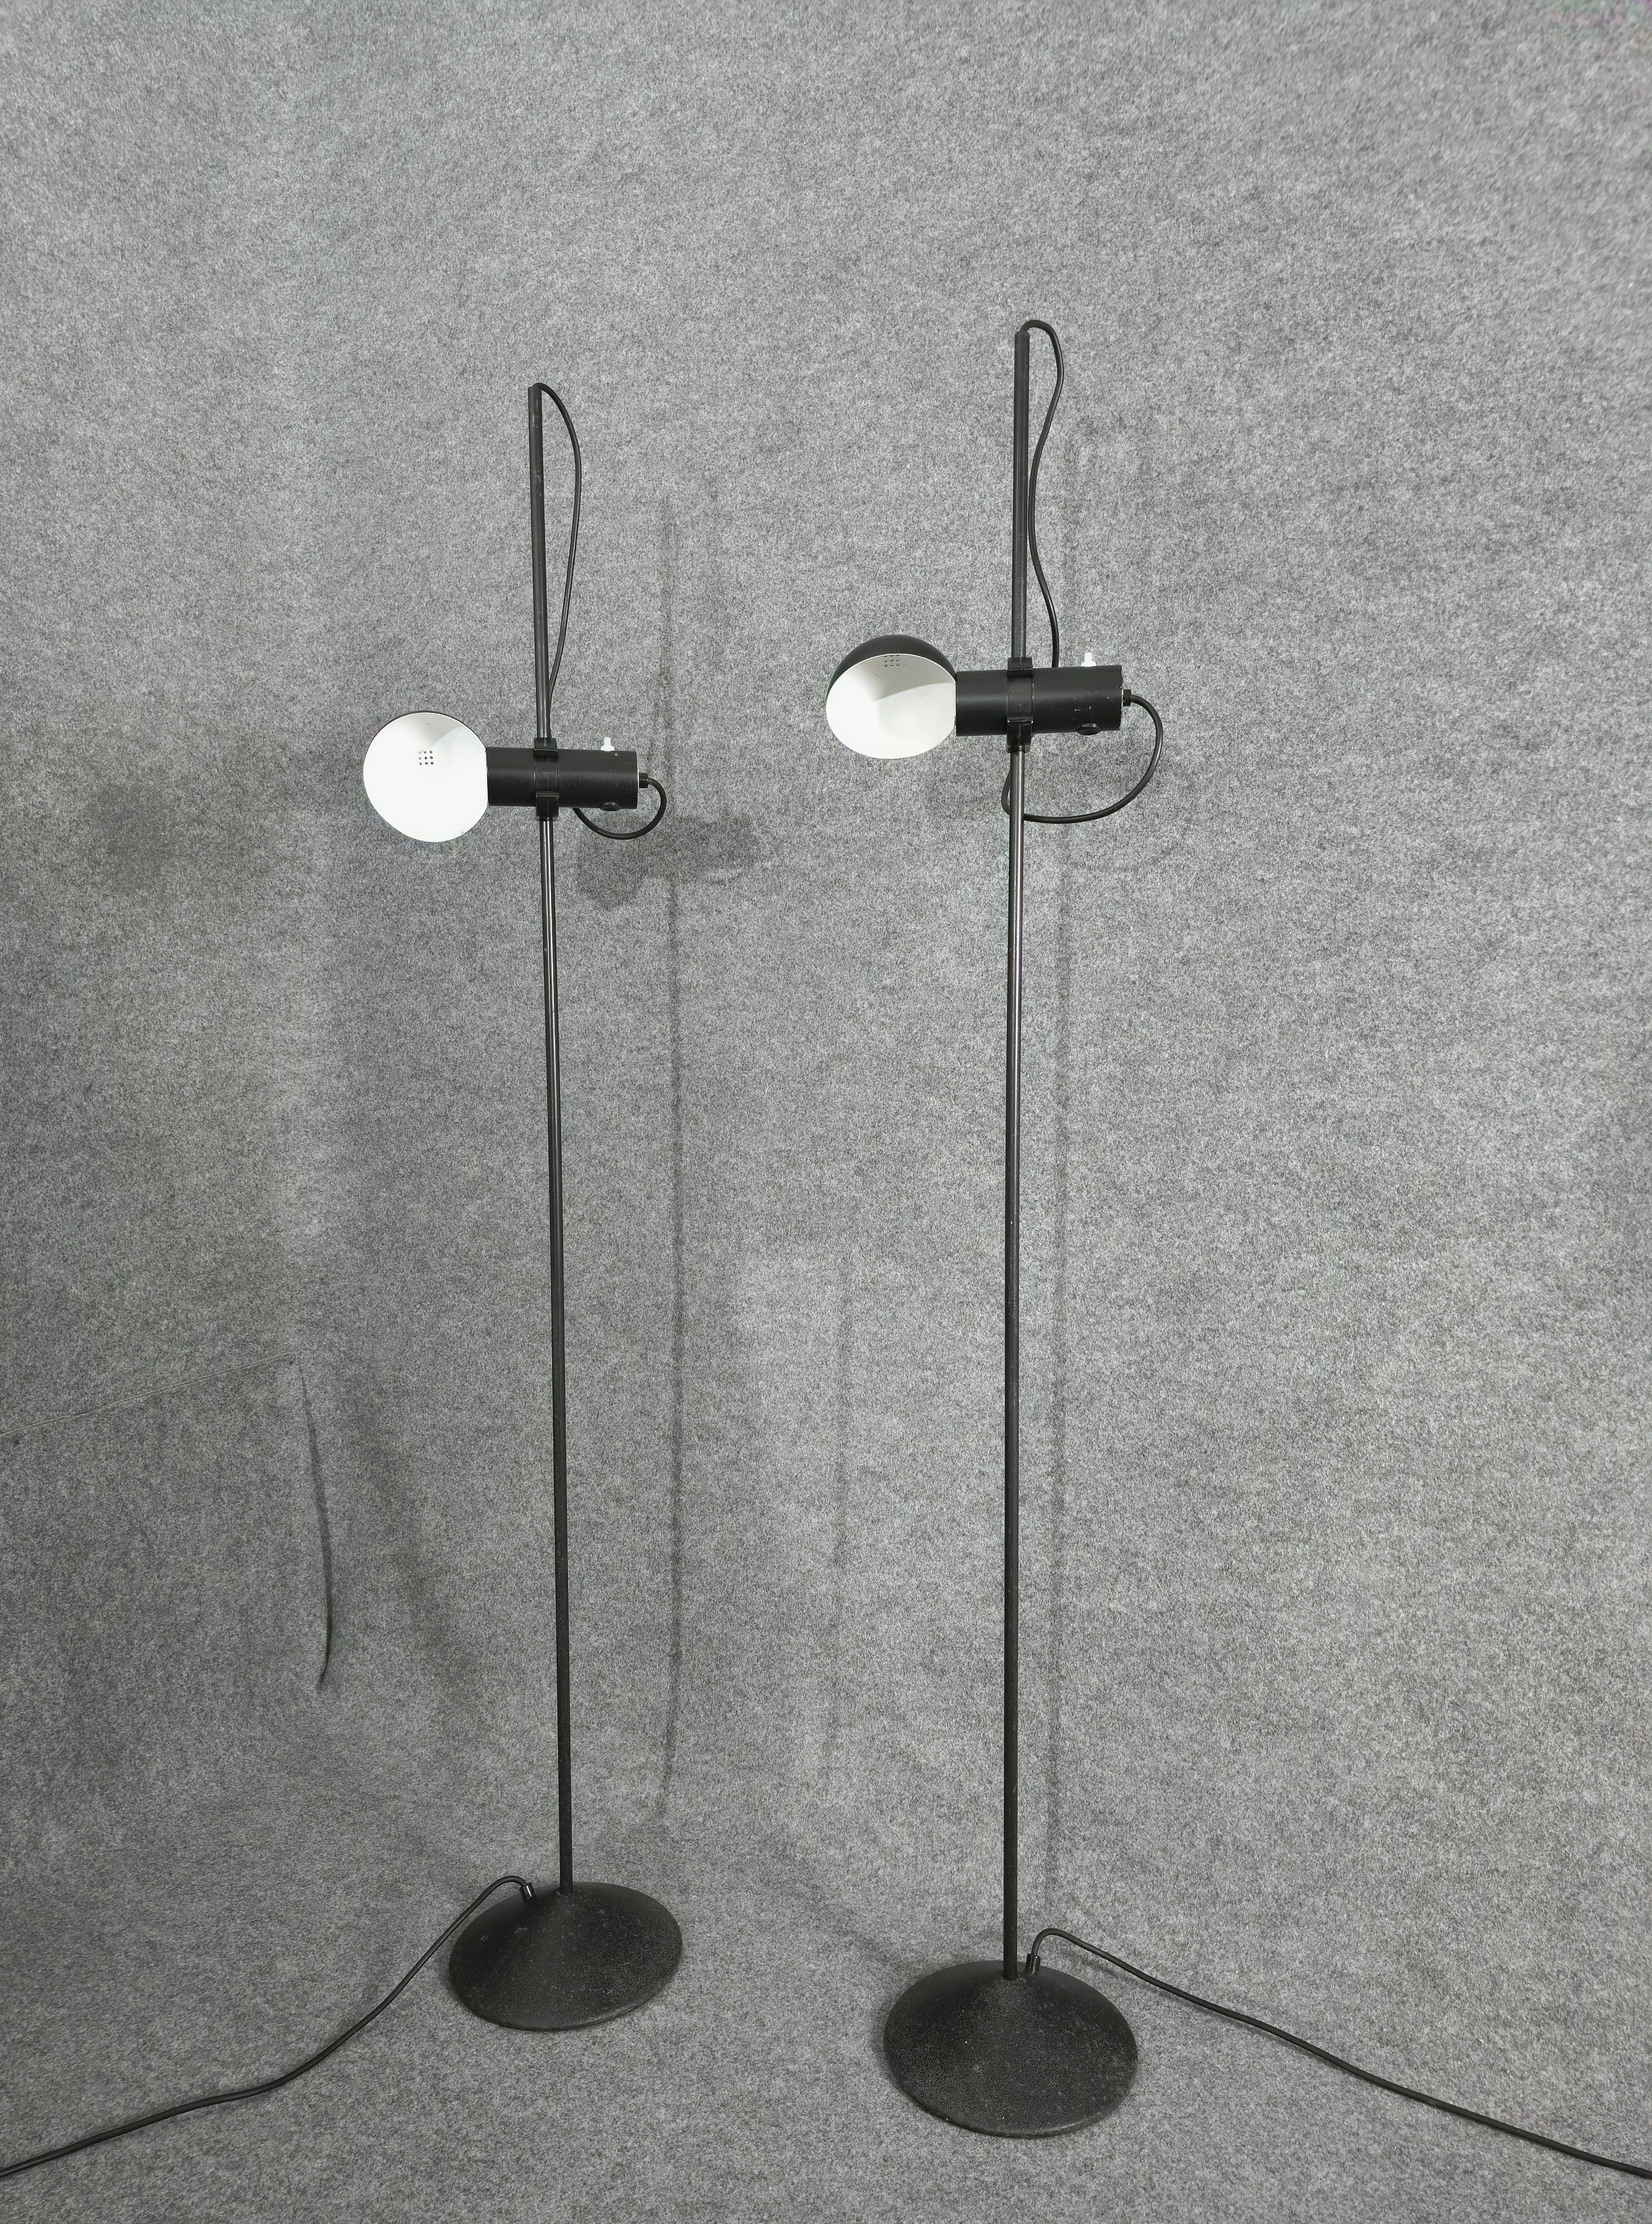 Deux lampadaires produits en Italie dans les années 1960. Structure métallique peinte en noir. Hauteur réglable, diffuseur hémisphérique réglable, base conique circulaire, chaque pièce est conservée dans son état d'origine. Parfaitement